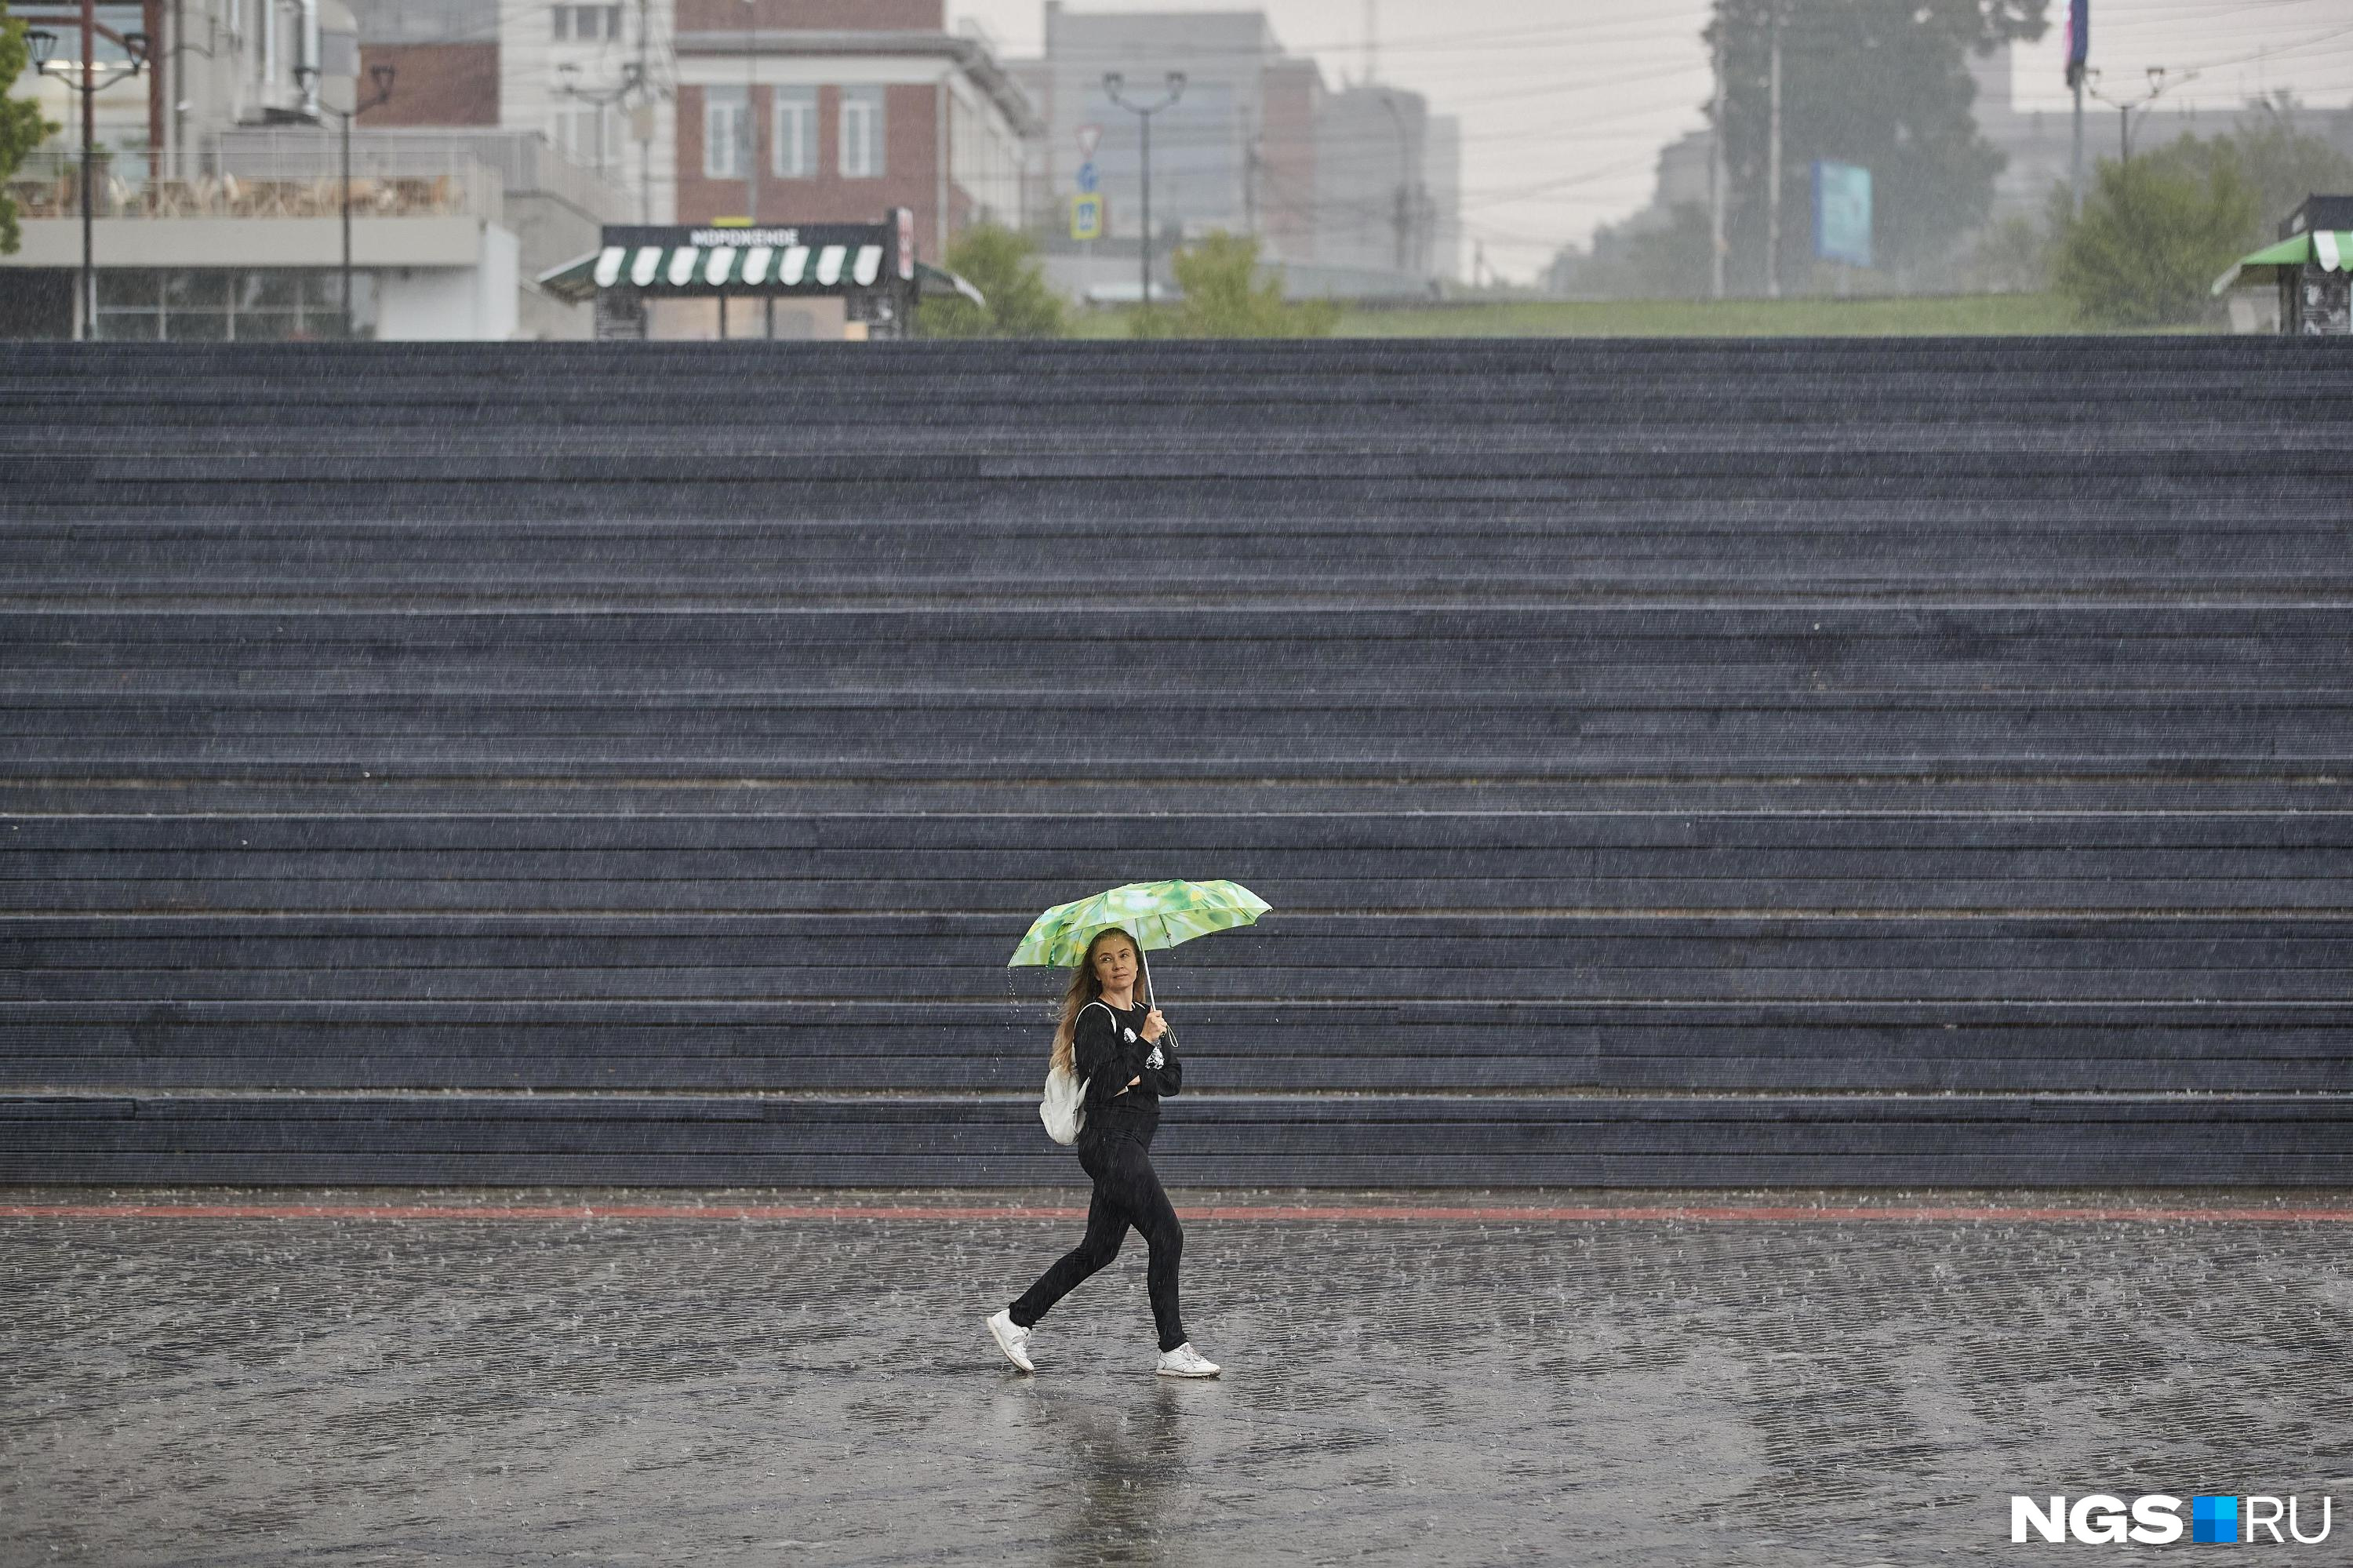 Убираем купальник или зонтики? Каким будет июль в Кузбассе — изучаем погодные сервисы